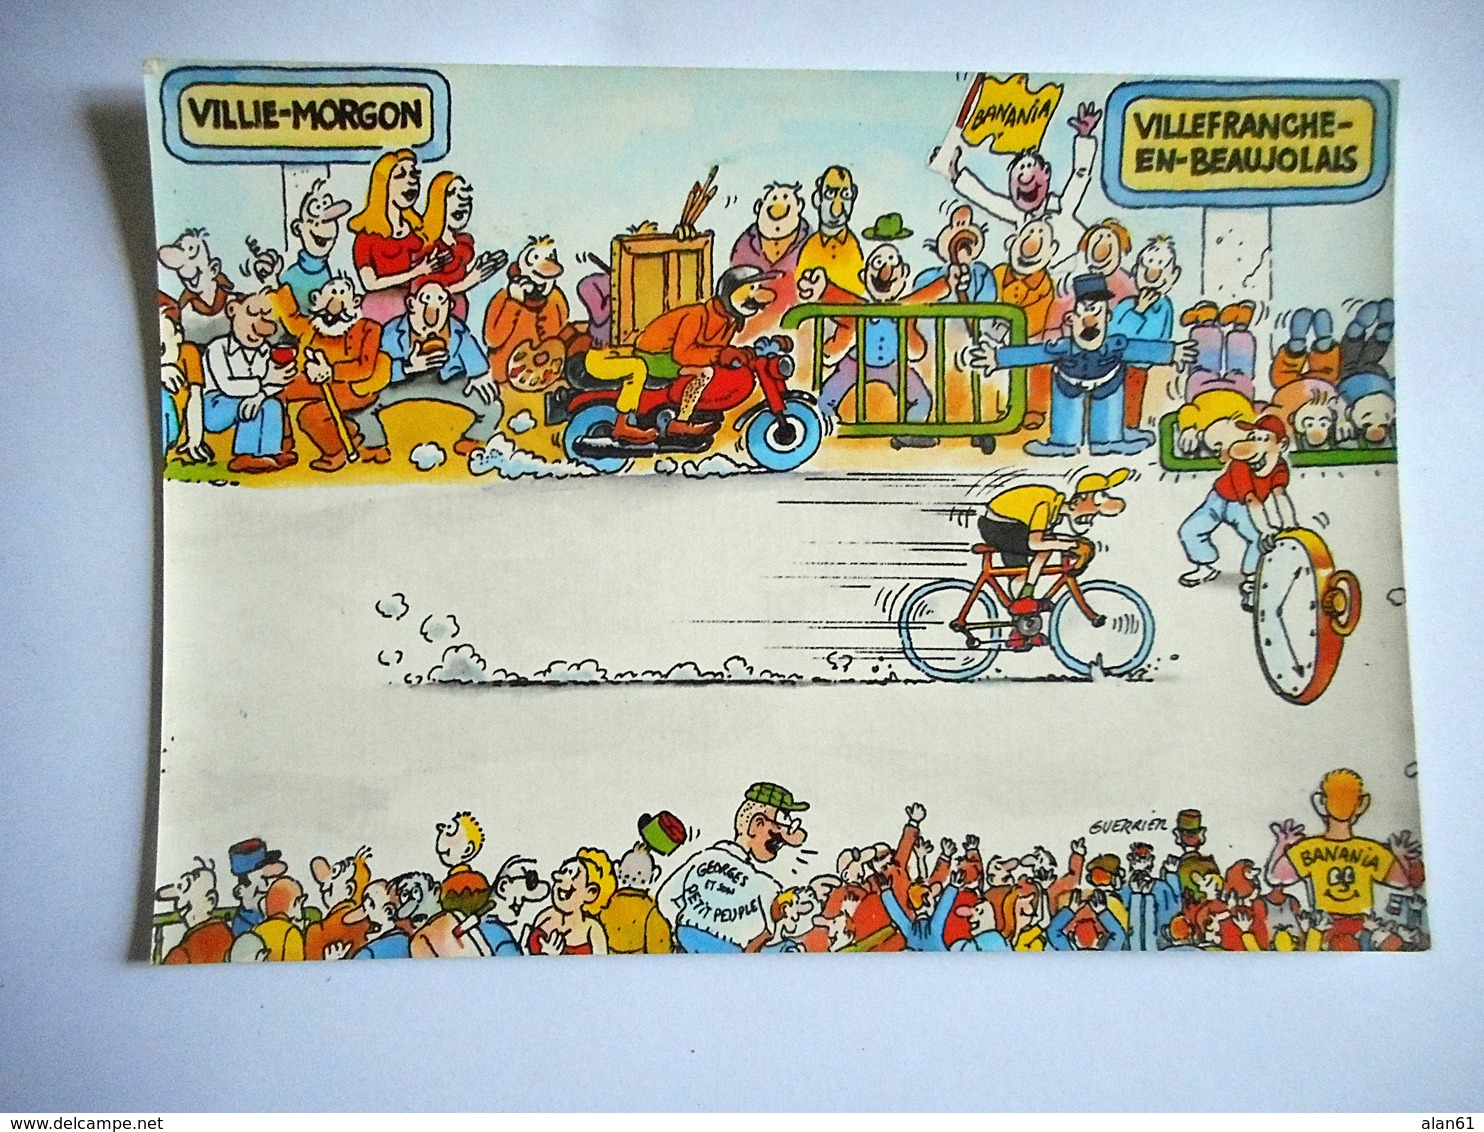 CPM TOUR DE FRANCE 1984 22 EME ETAPE VILLIE MORGON VILLEFRANCHE EN BEAUJOLAIS Pub BANANIA - Cyclisme